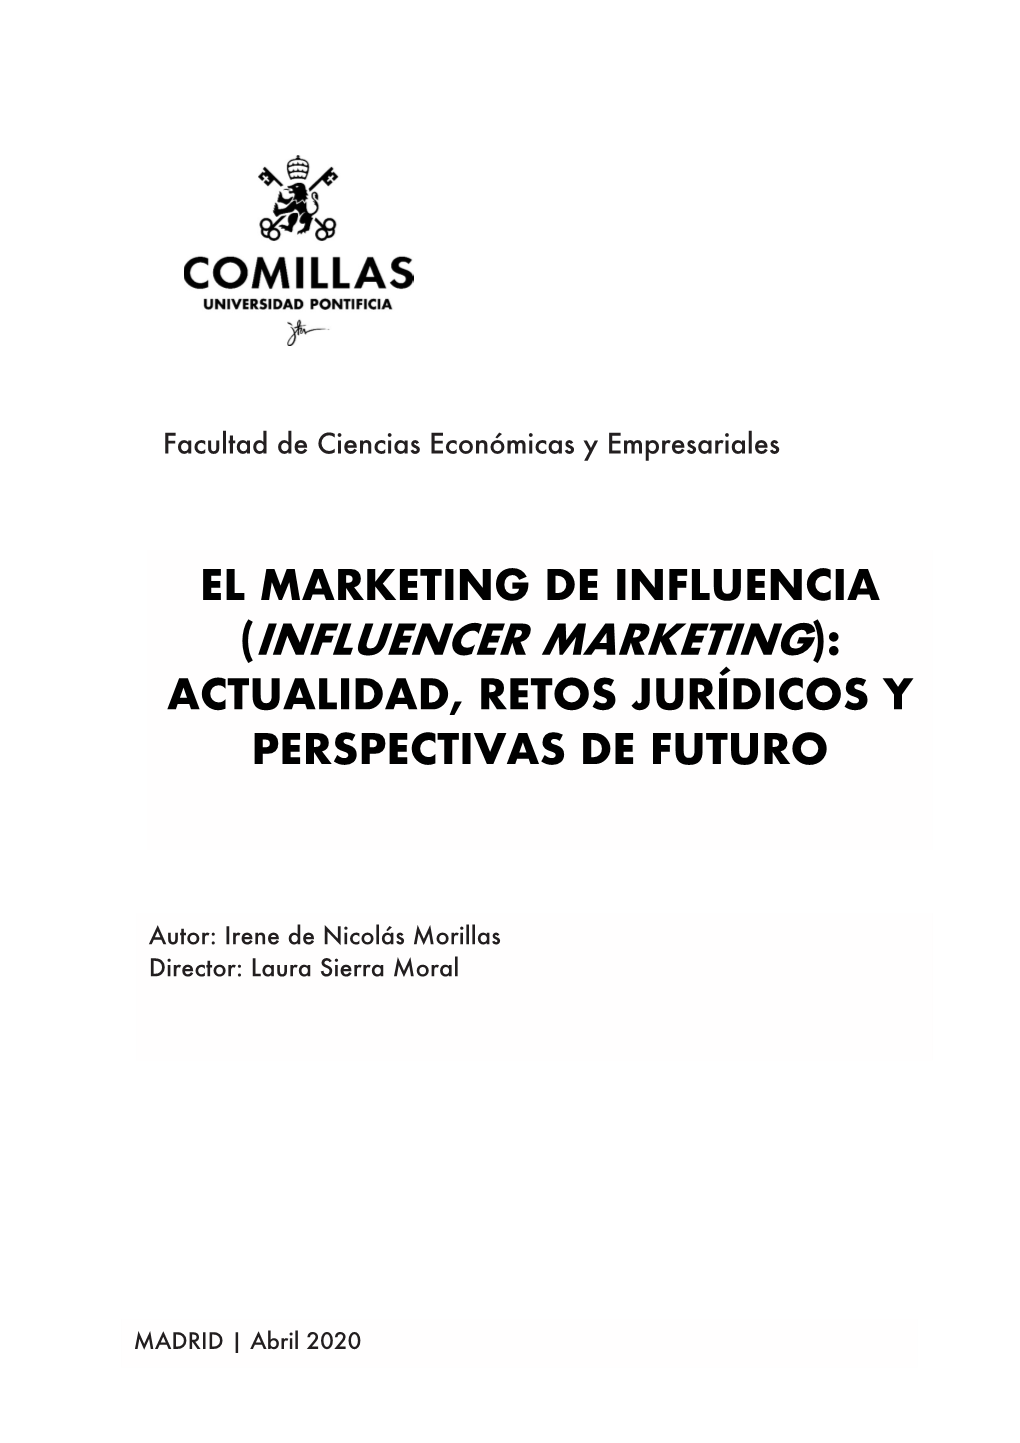 (Influencer Marketing): Actualidad, Retos Jurídicos Y